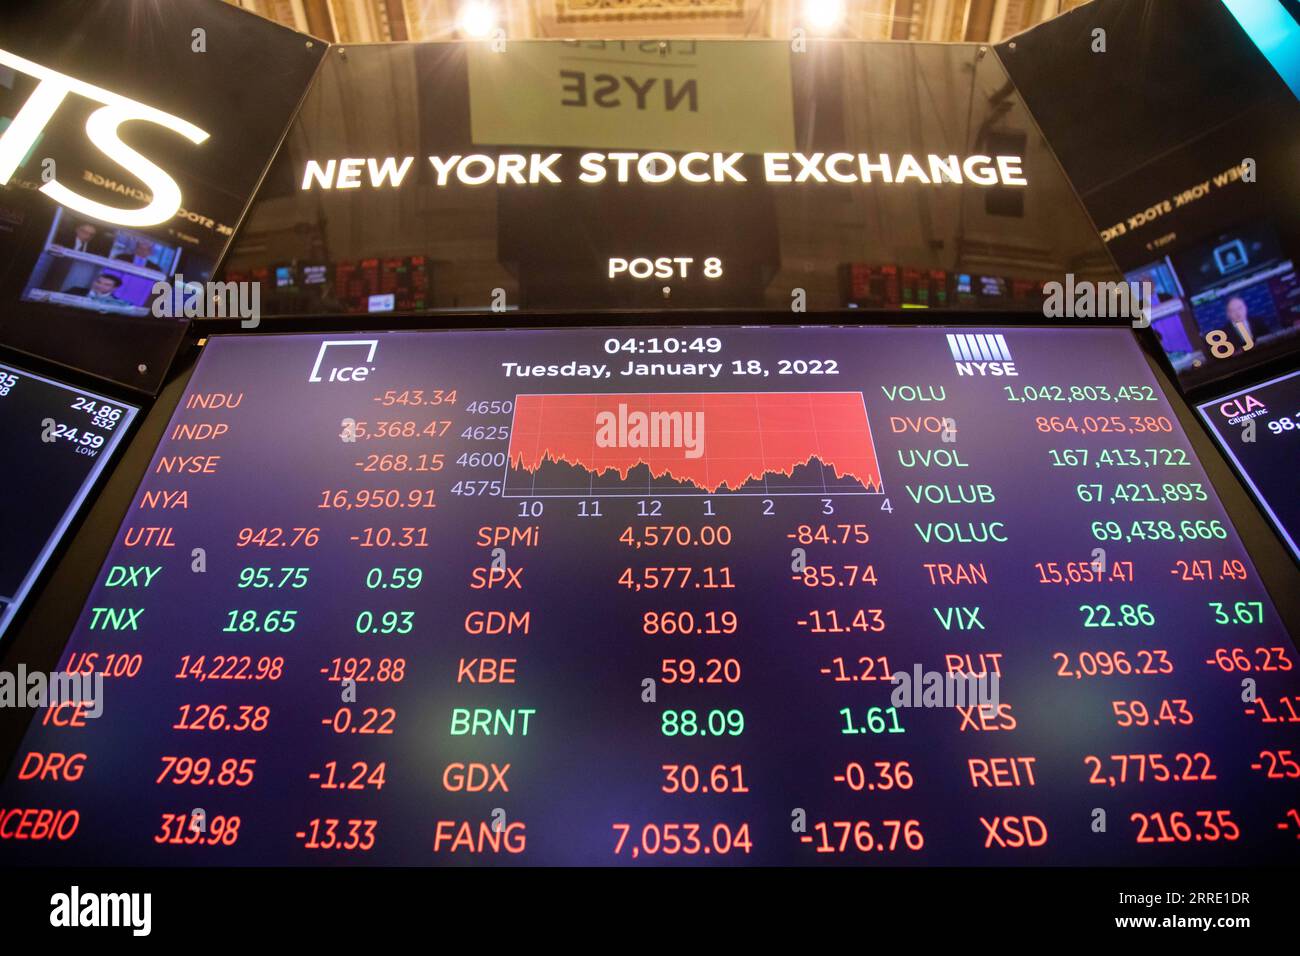 220119 -- NEW YORK, 19. Januar 2022 -- ein elektronischer Bildschirm zeigt am 18. Januar 2022 Handelsinformationen an der New York Stock Exchange NYSE in New York, USA. Die US-Aktien brachen am Dienstag aufgrund der hohen Verkaufszahlen im Technologie- und Finanzsektor ein. Der Dow Jones Industrial Average fiel um 543,34 Punkte oder 1,51 Prozent auf 35.368.47. Die S&P 500 fiel um 85,74 Punkte oder 1,84 Prozent auf 4.577,11. Der Nasdaq Composite Index sank um 386,86 Punkte oder 2,60 Prozent auf 14.506.90. Michael Nagle U.S.-NEW YORK-STOCK-FALL WangxYing PUBLICATIONxNOTxINxCHN Stockfoto